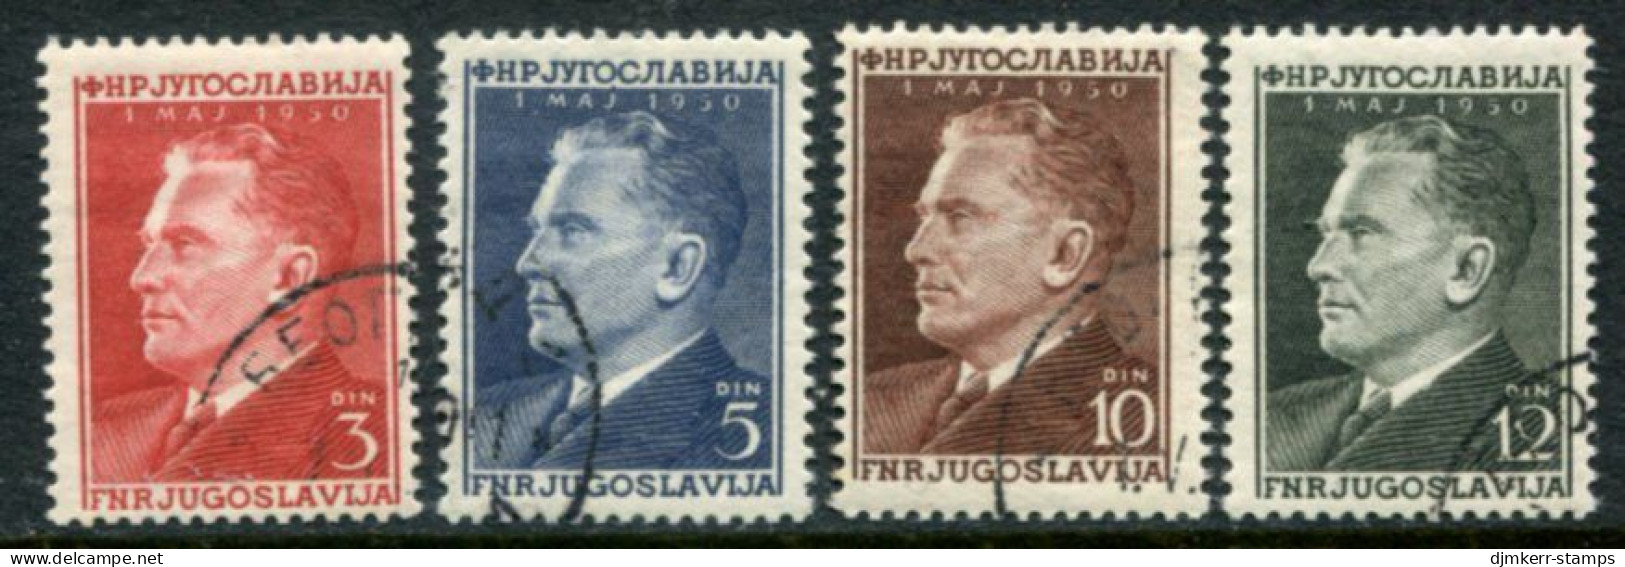 YUGOSLAVIA 1950 Labour Day - Tito Used.  Michel 605-08 - Usati